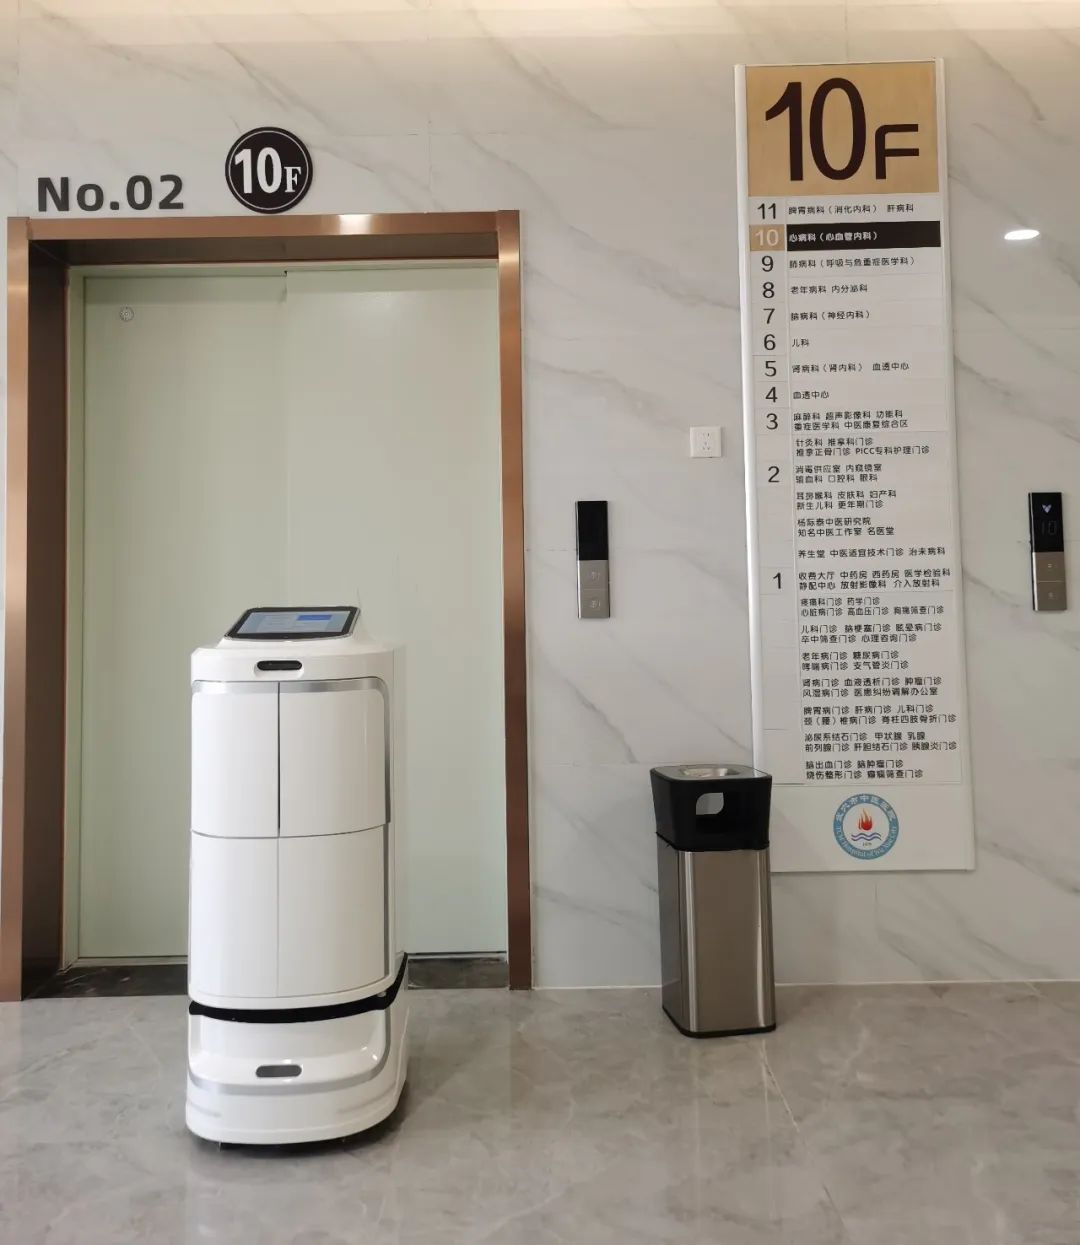 Tecnologia innovativa al servizio delle cure mediche: tre serie di robot Alpha Robotics nel caso applicativo “Wuxue City Hospital of Traditional Chinese Medicine”!